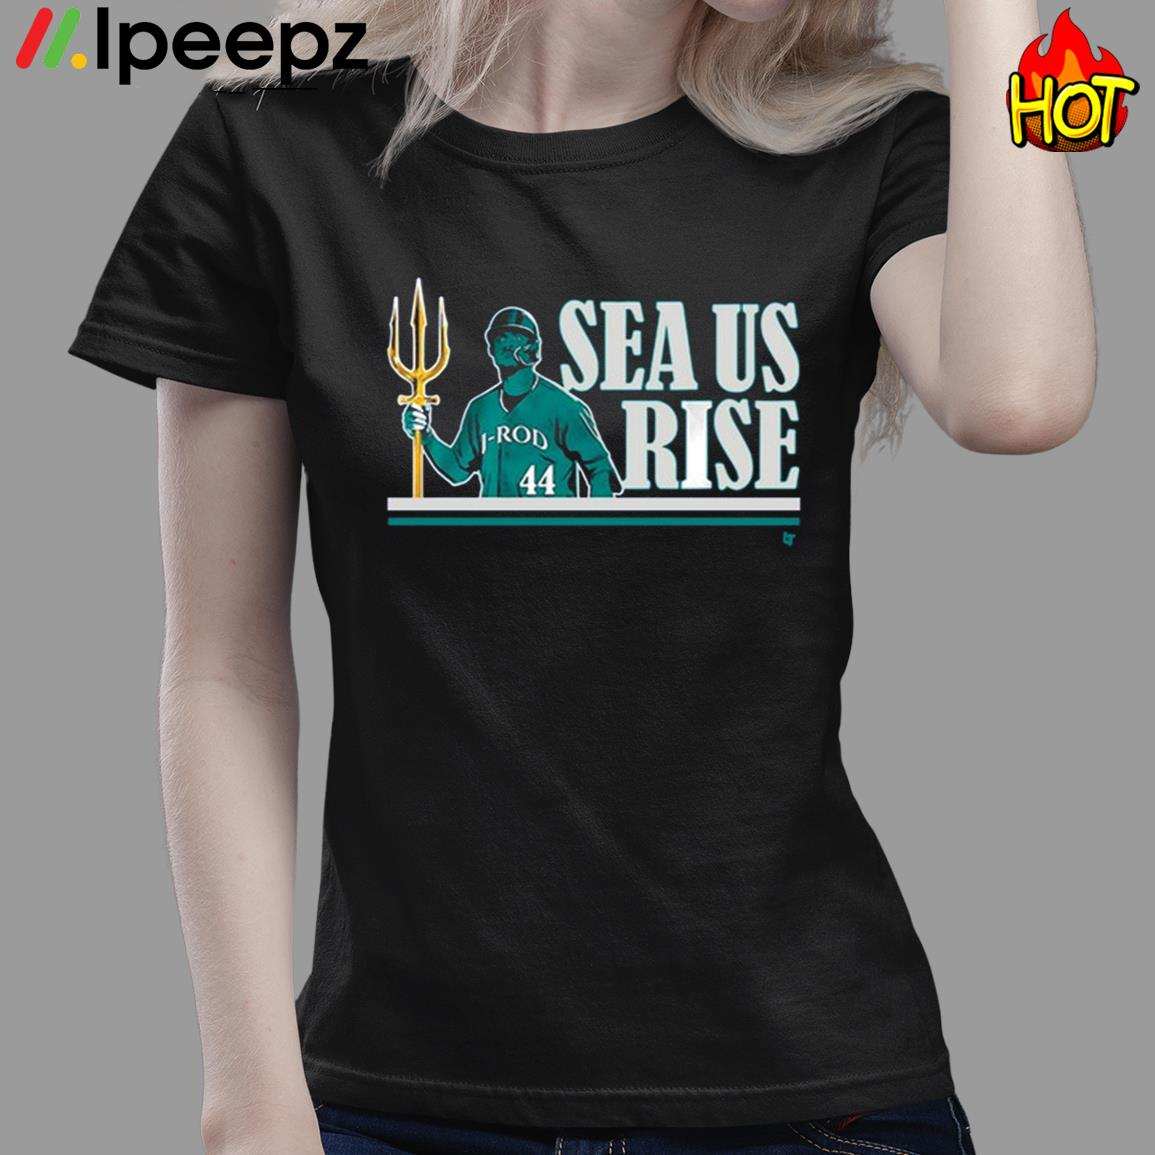 sea us rise